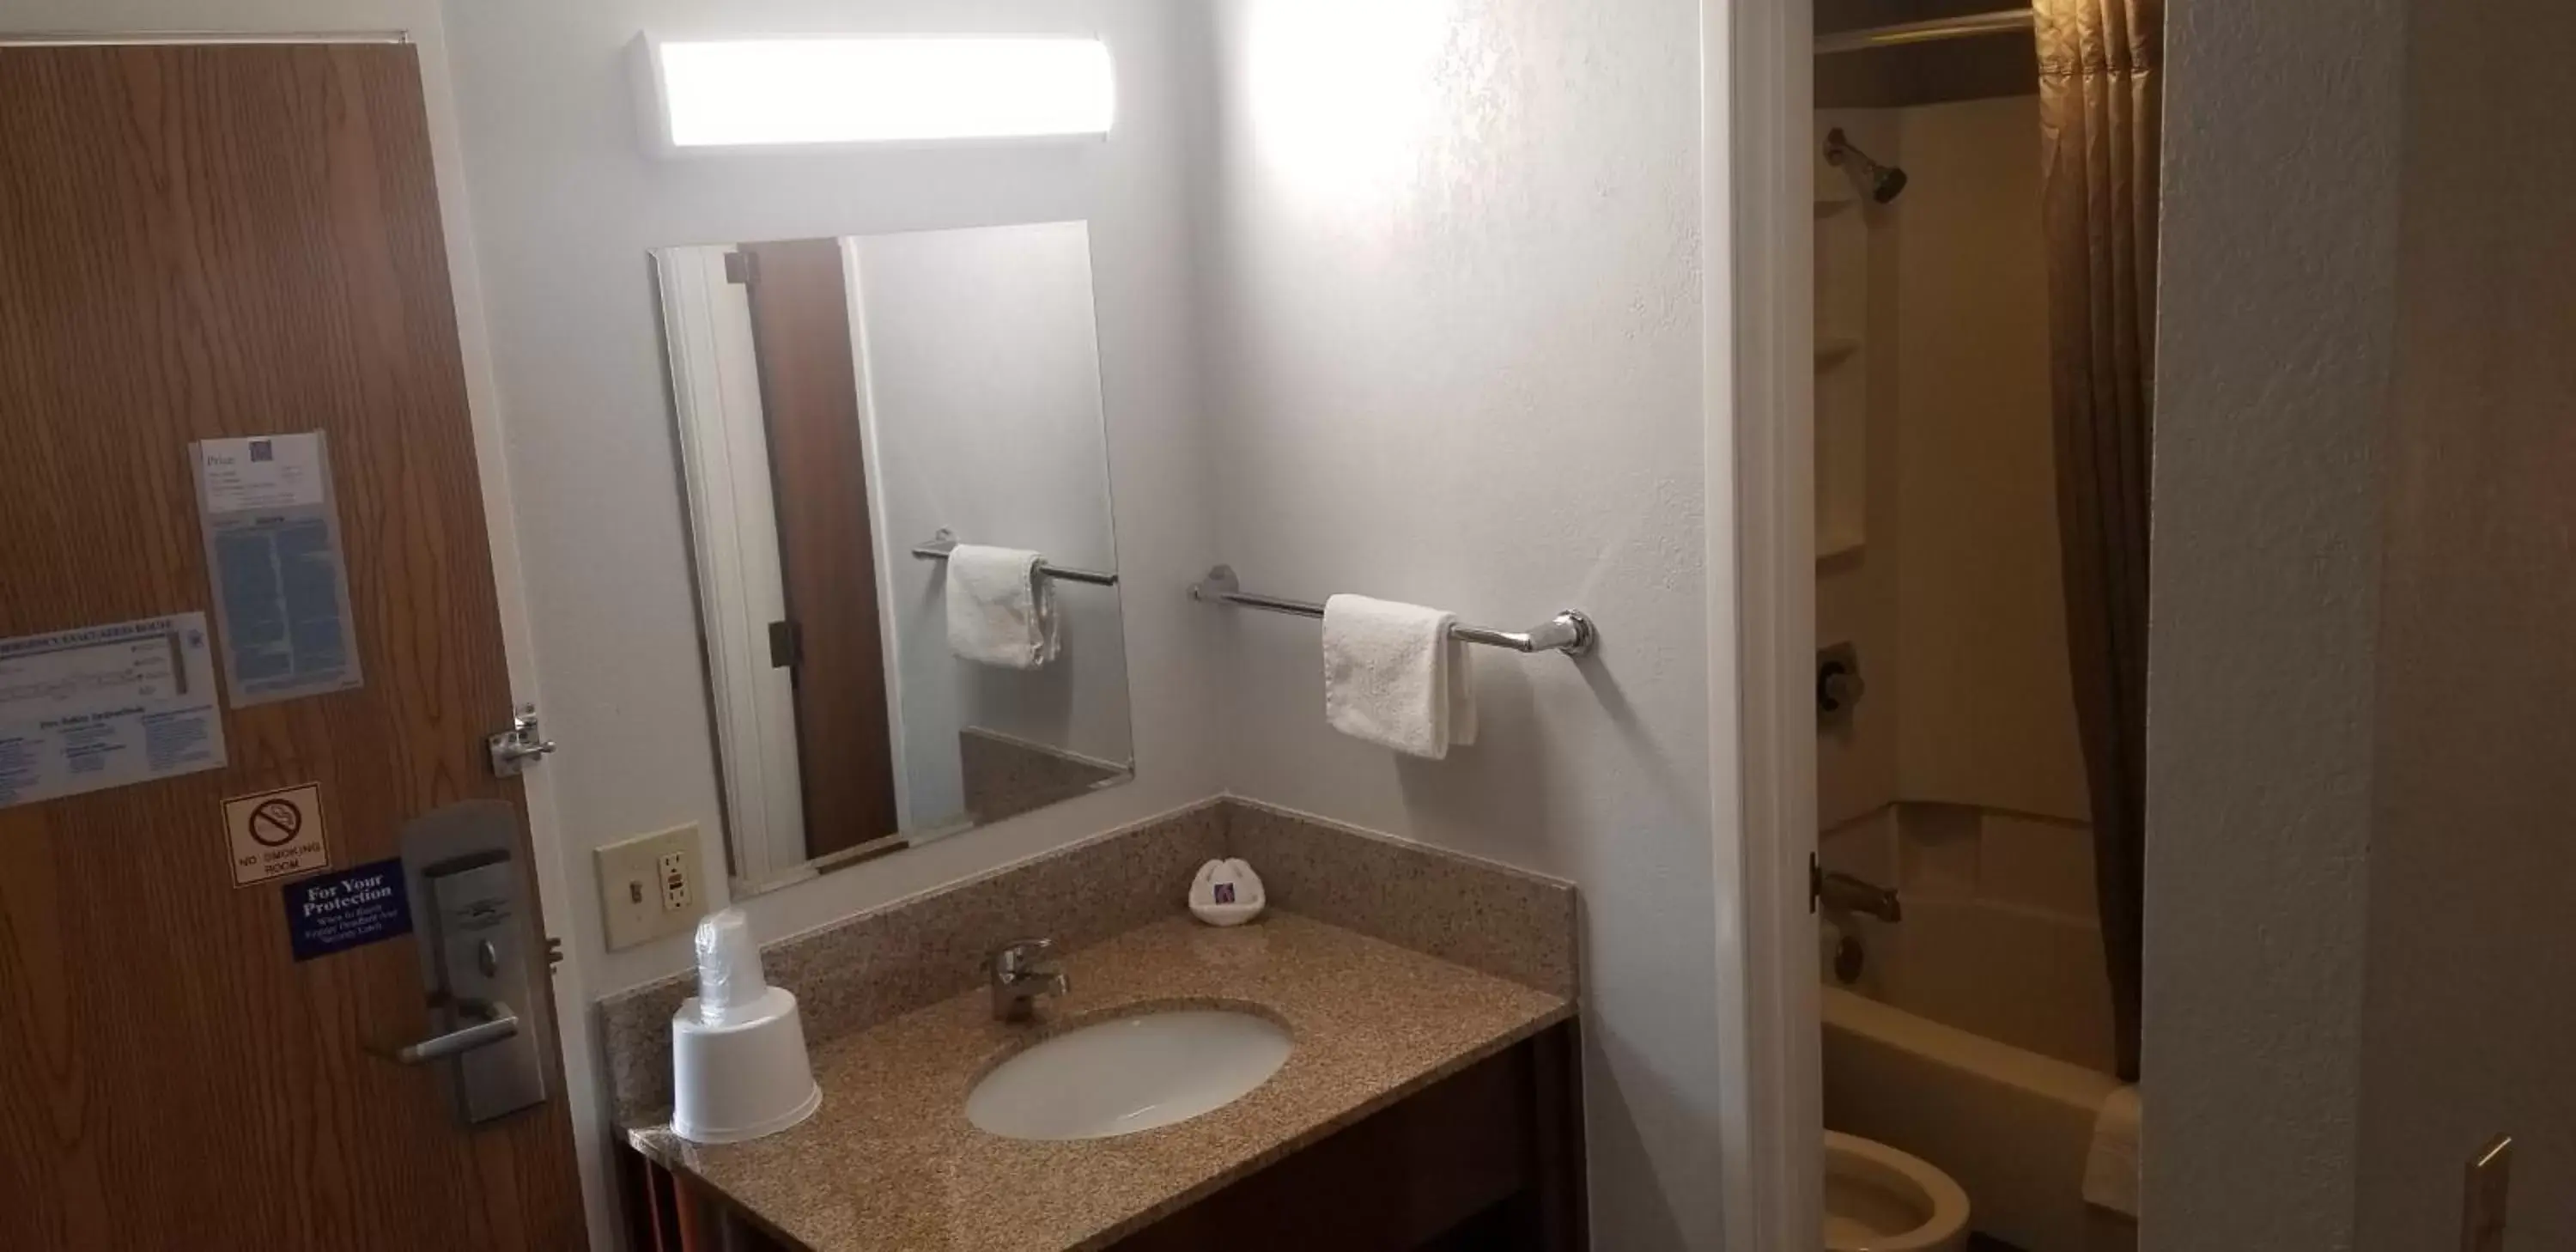 Bathroom in Motel 6-Elk Grove Village, IL - O'Hare